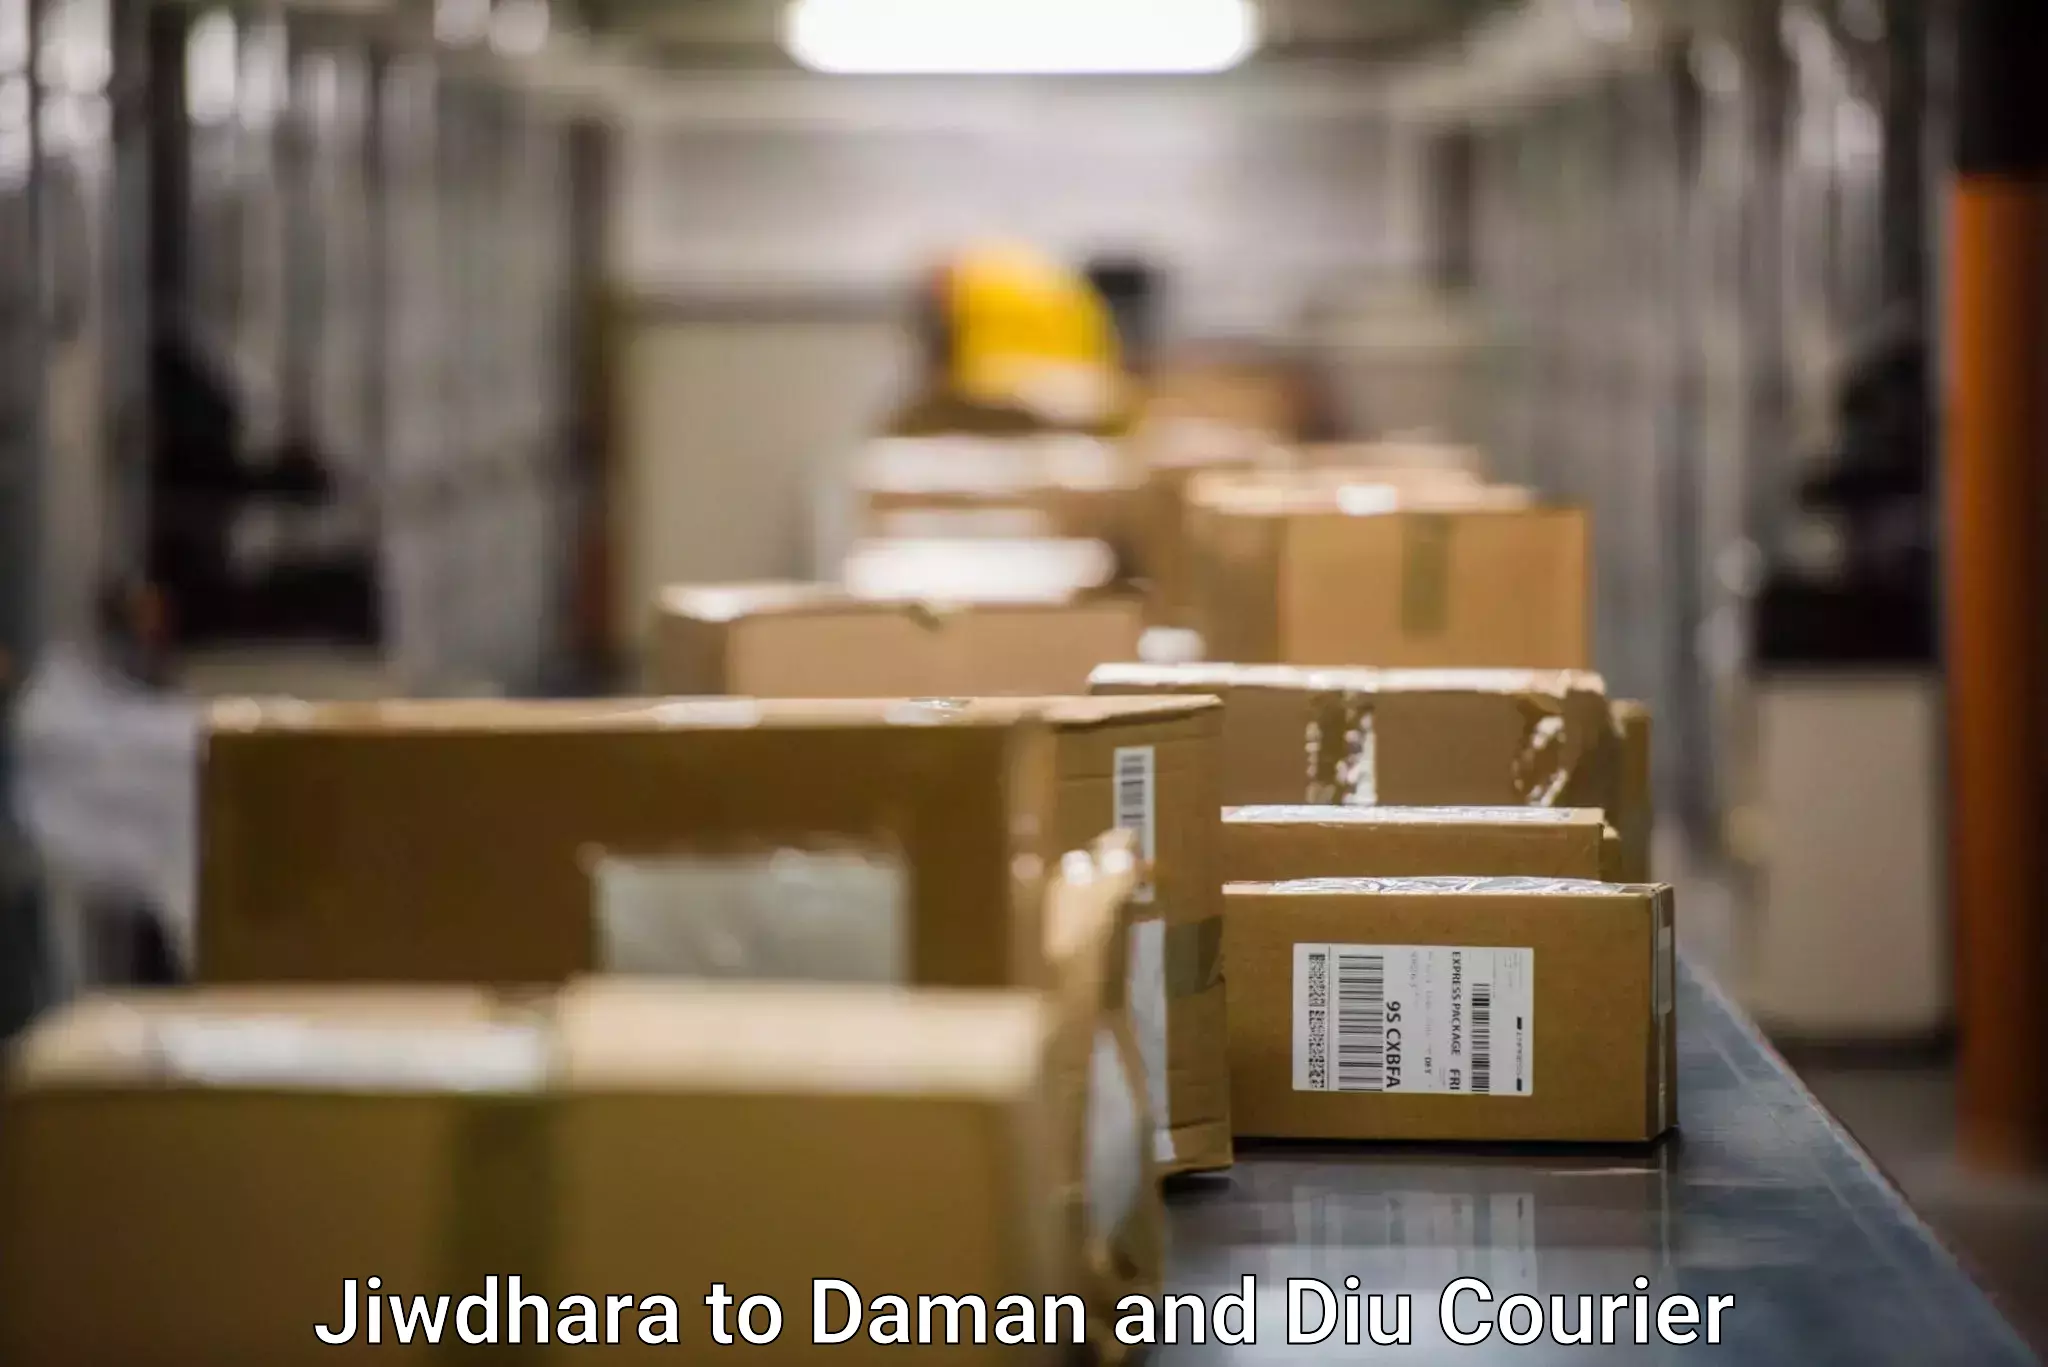 Discounted shipping Jiwdhara to Diu